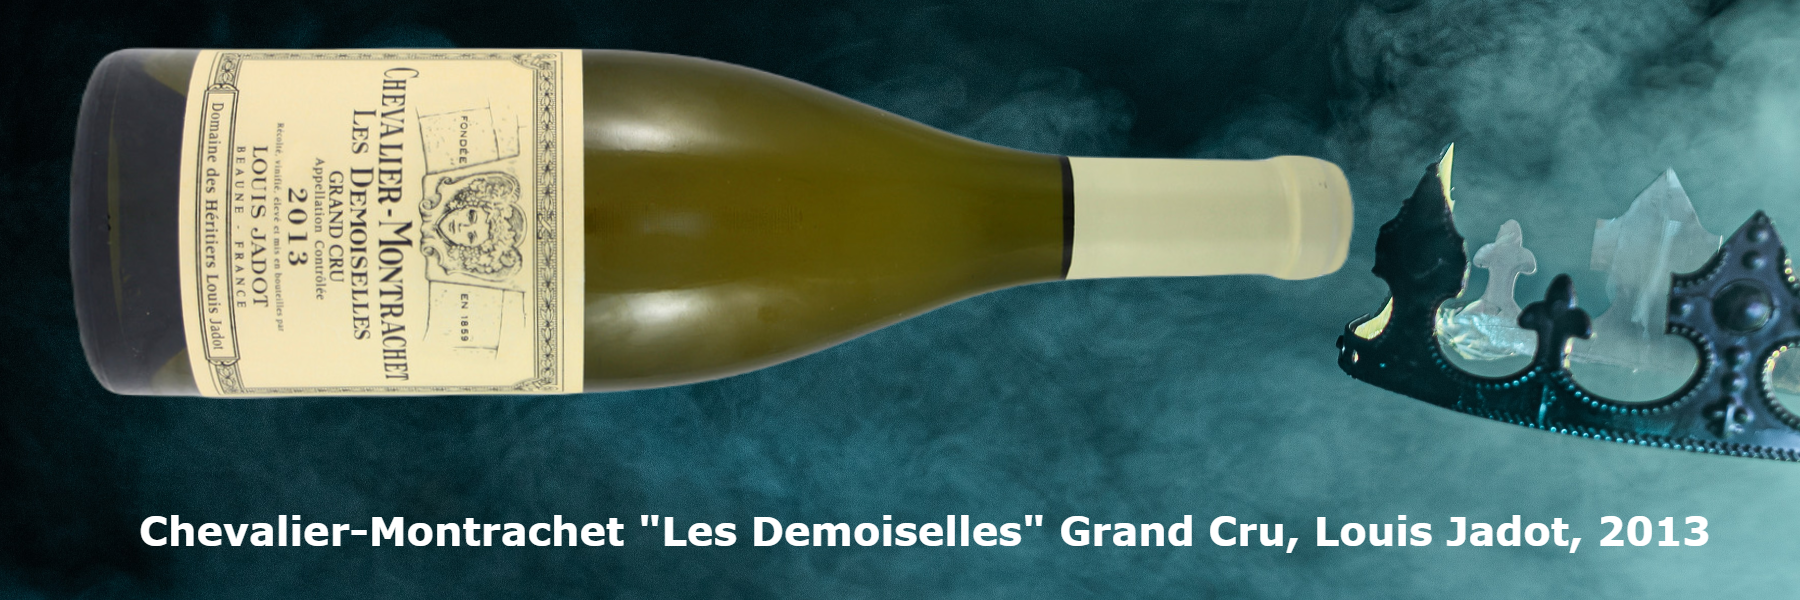 Chevalier-Montrachet "Les Demoiselles" Grand Cru, Louis Jadot, 2013